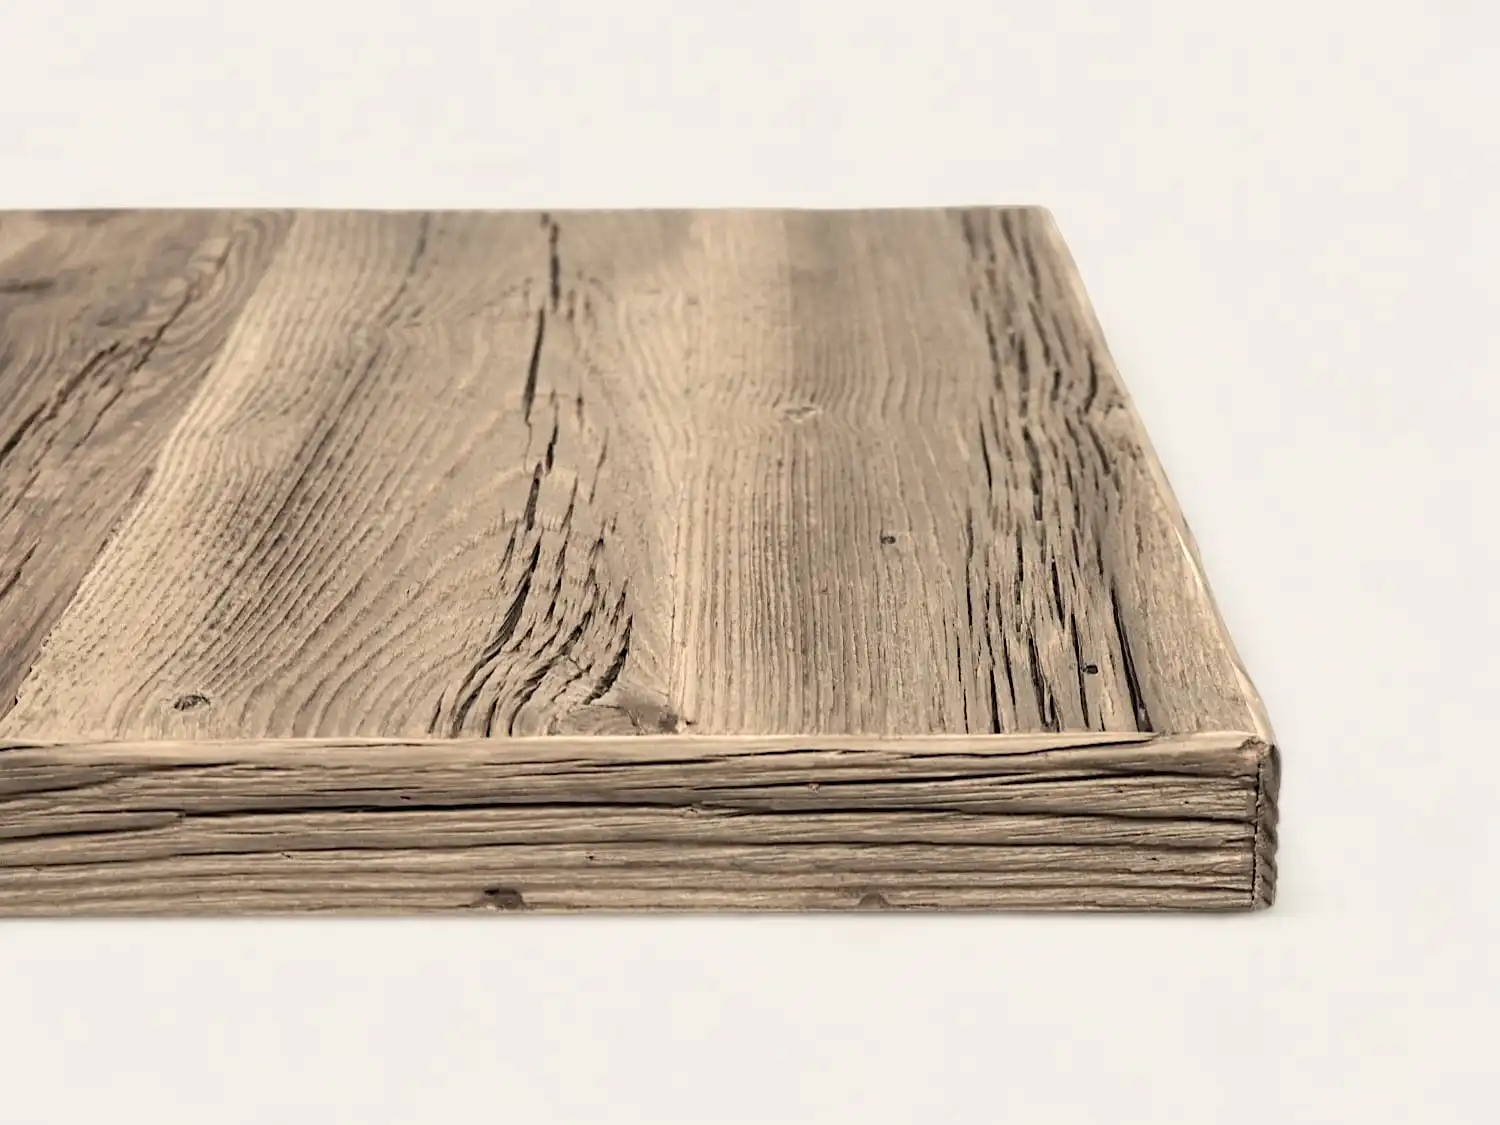 Une vue rapprochée du bord latéral d'une planche de bois rectangulaire révèle une surface texturée et patinée, dégageant un charme rustique de campagne, parfait pour une table de style ferme.